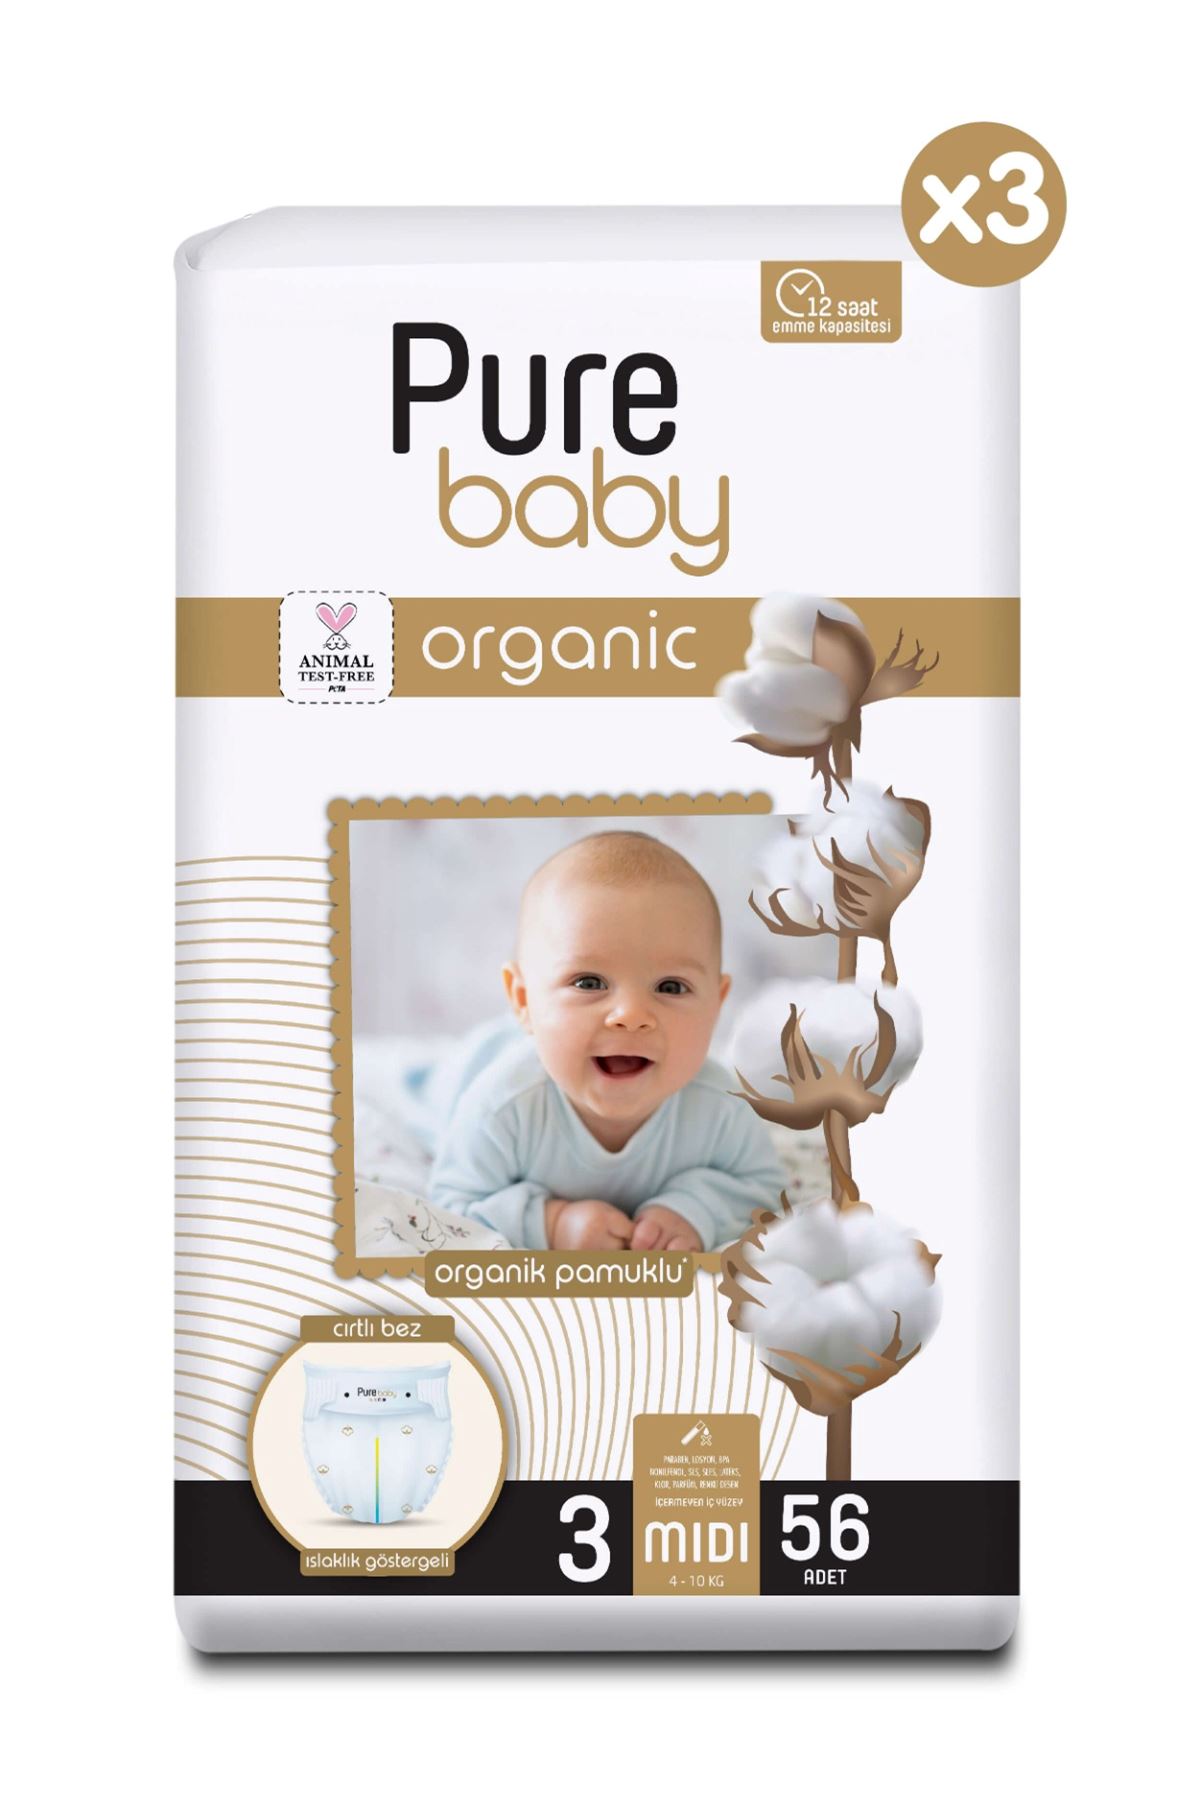 Pure Baby Organik Pamuklu Cırtlı Bez 3'Lü Paket 3 Numara Midi 168 Adet